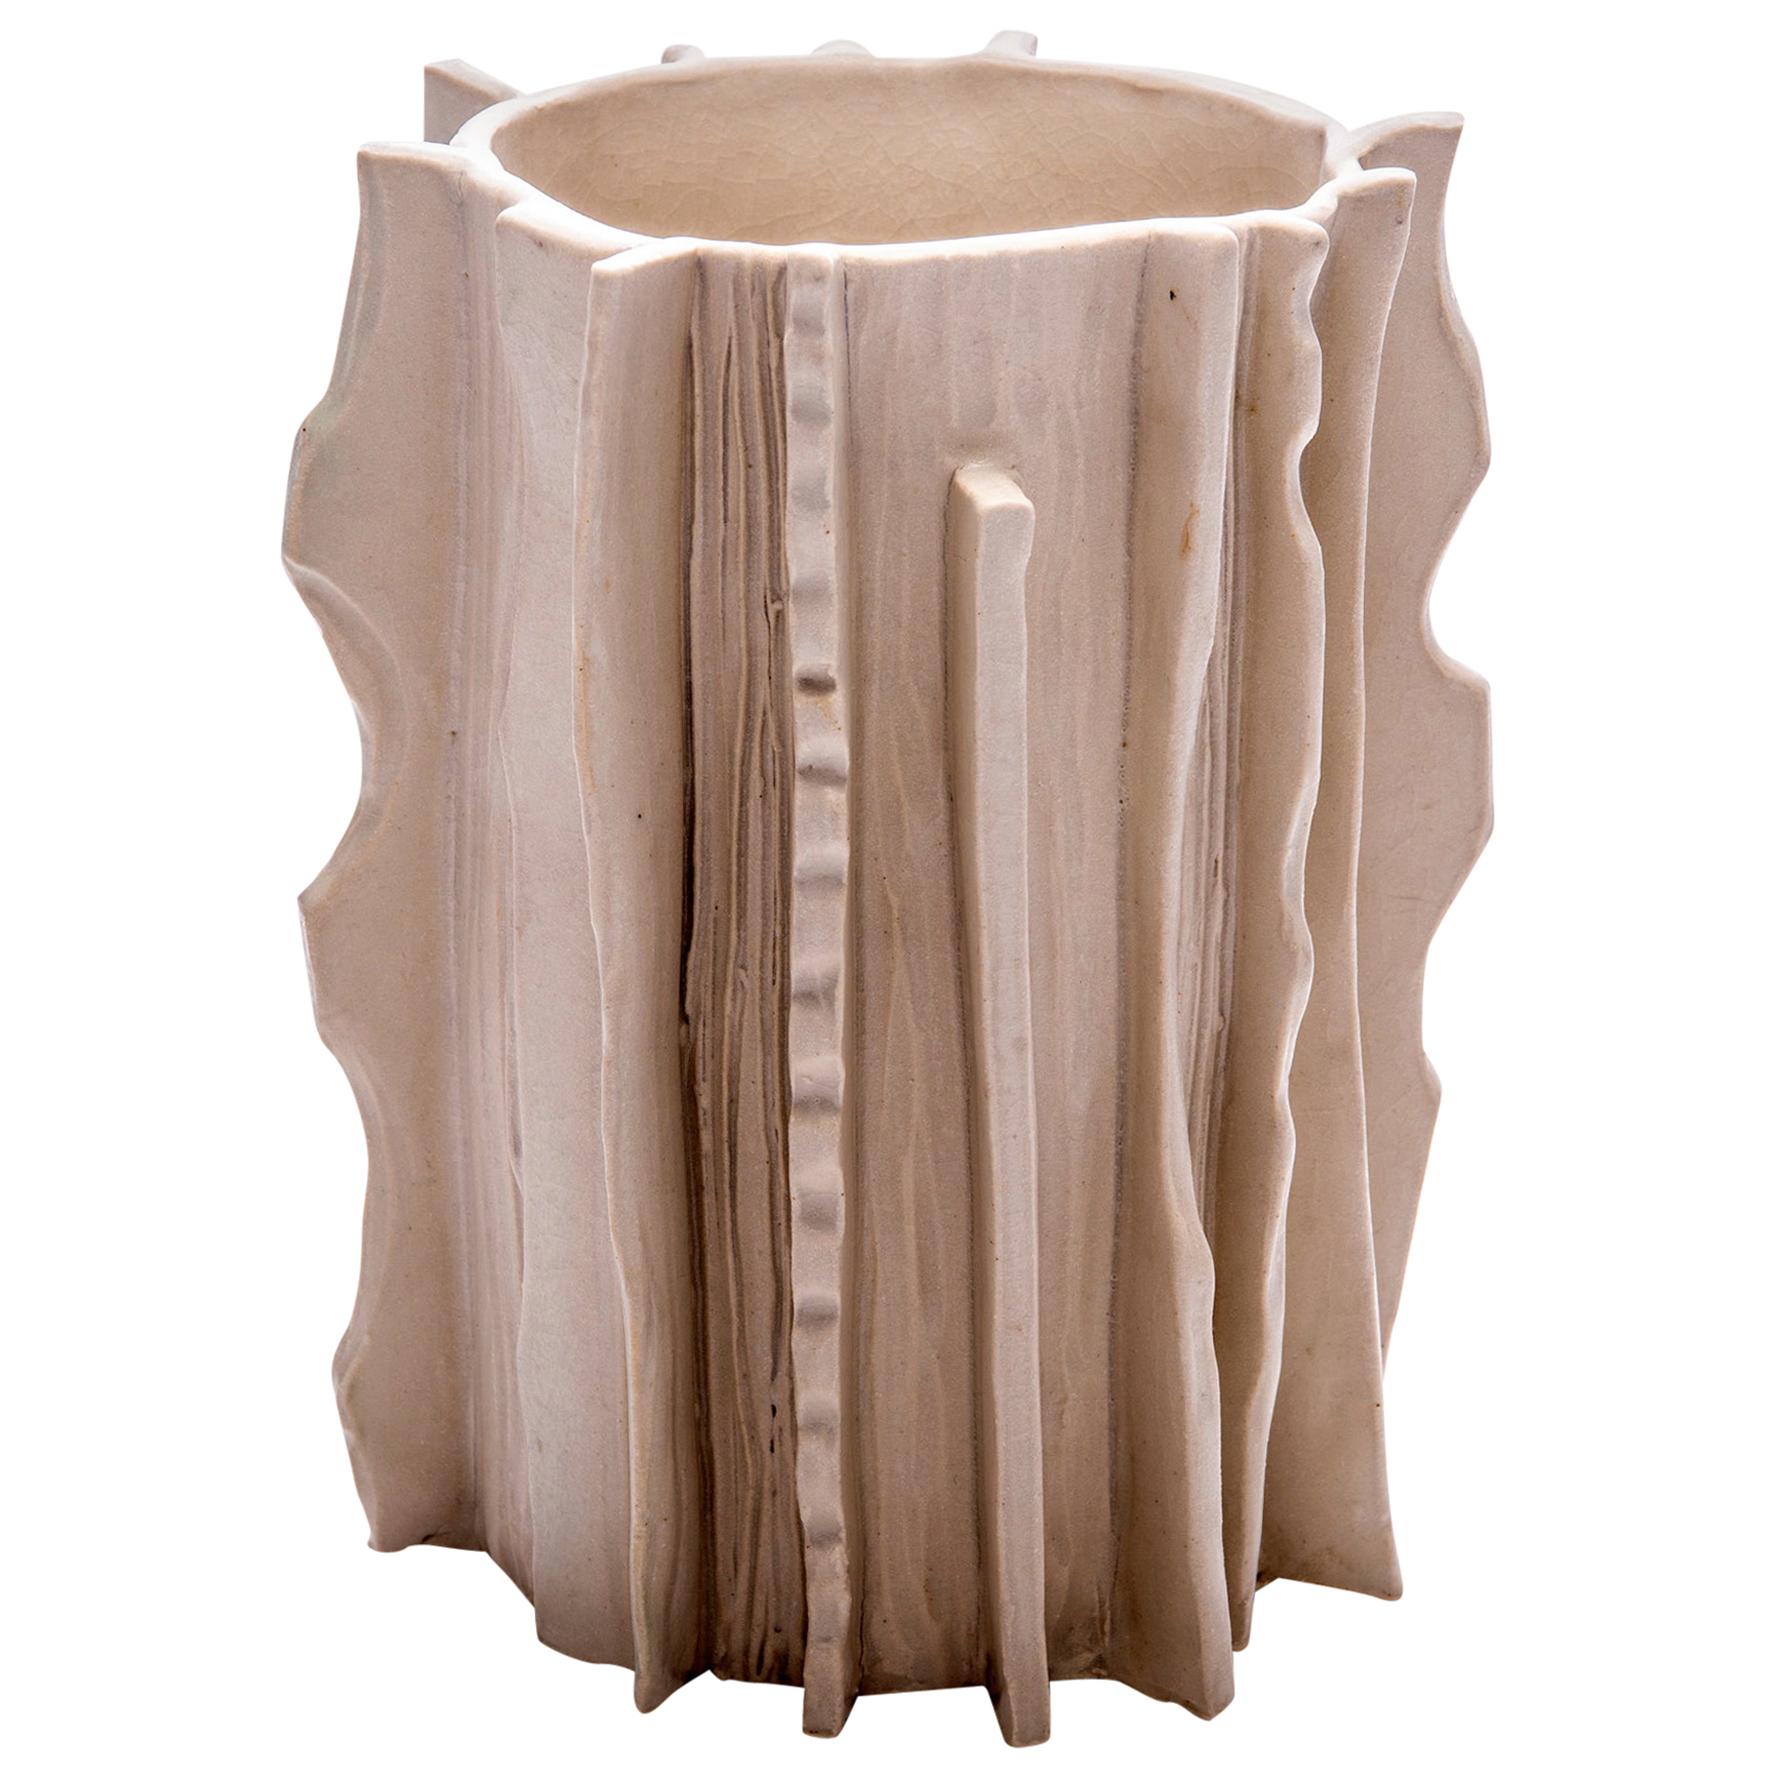 Marcello-Gefäß aus glasierter Keramik aus der Moderno-Kollektion von Trish DeMasi